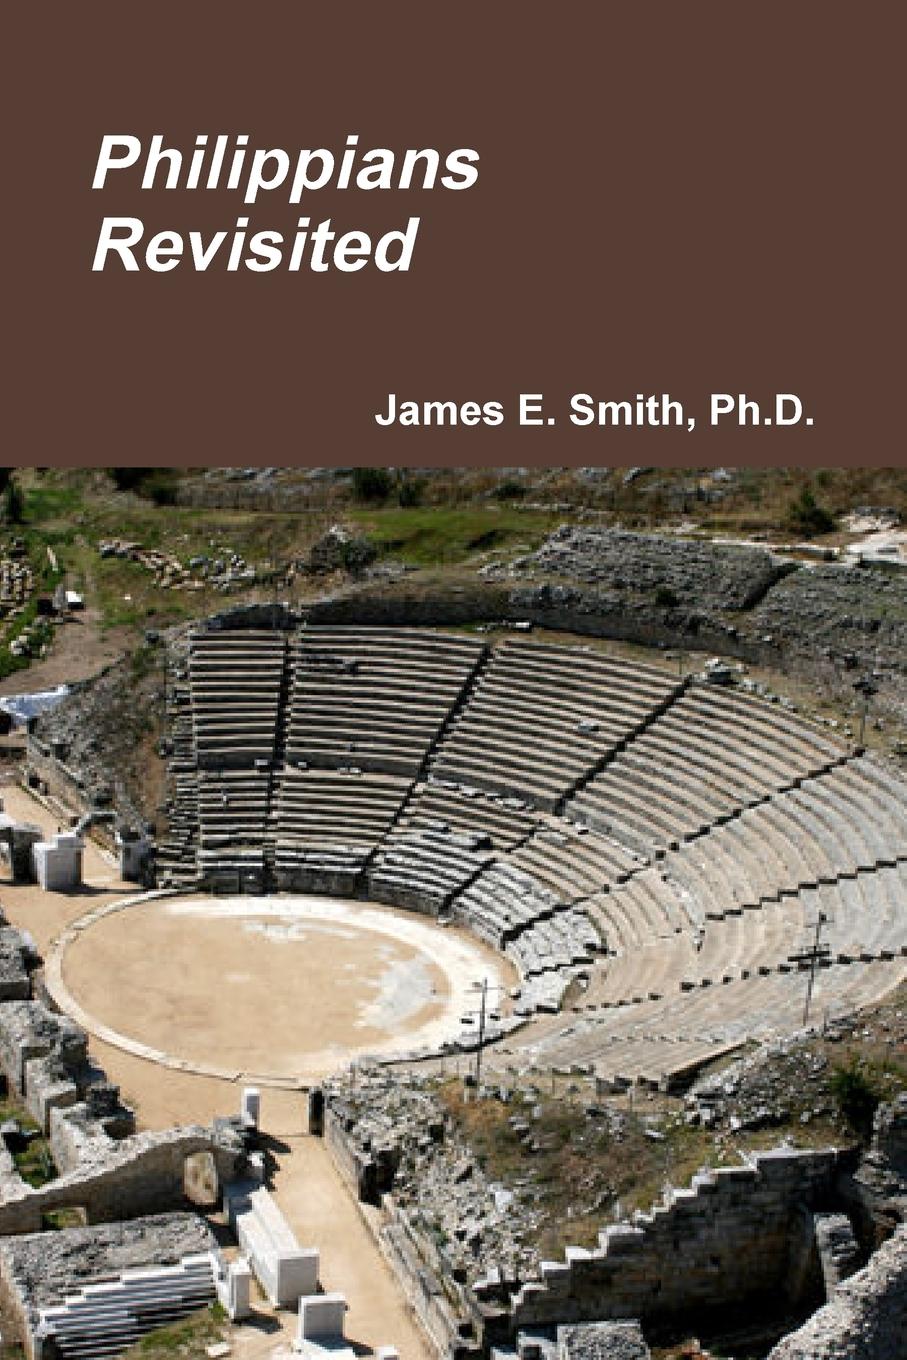 Ph.D. James E. Smith Philippians Revisited